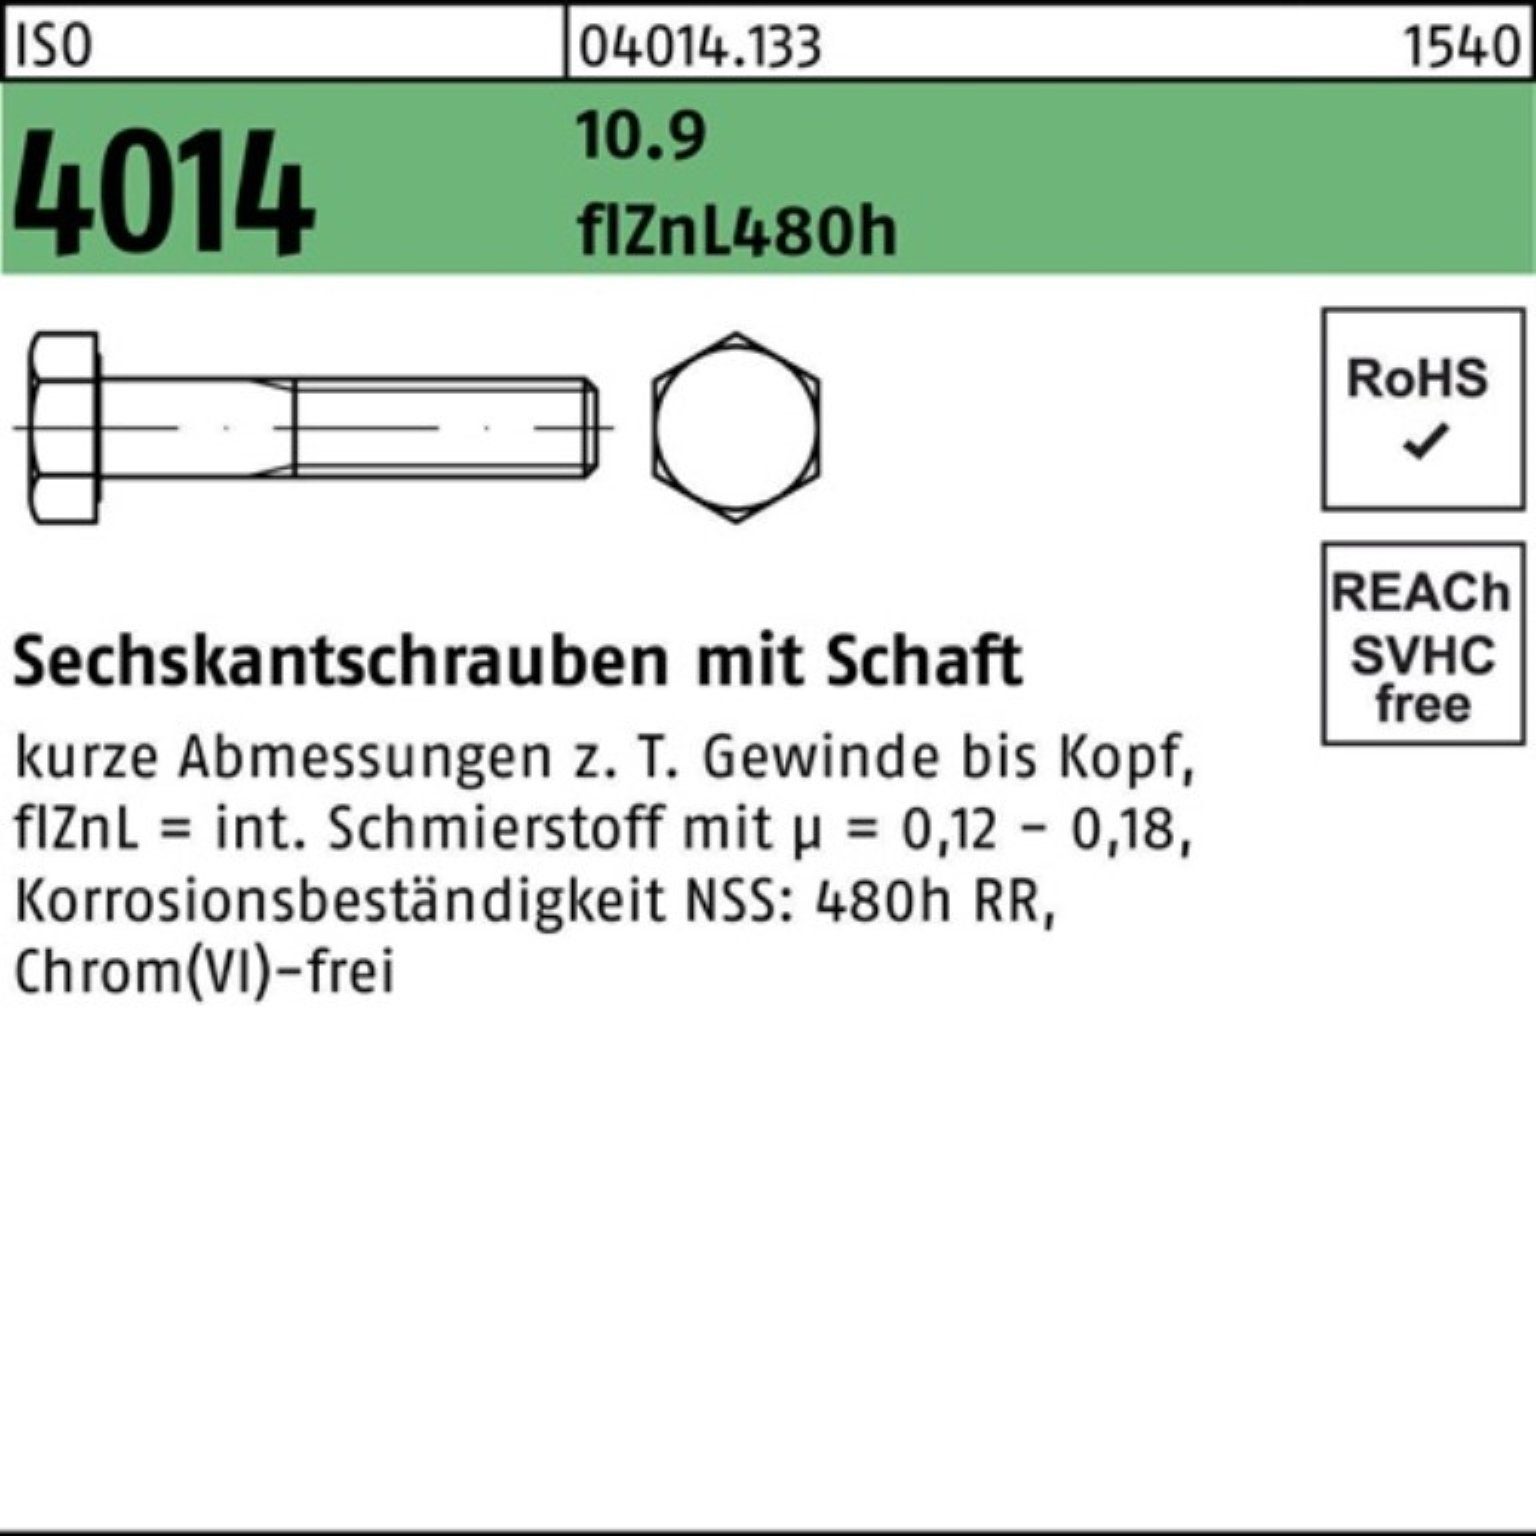 ISO 100er Sechskantschraube Bufab Sechskantschraube Pack 4014 Schaft M20x zinklamelle 180 10.9